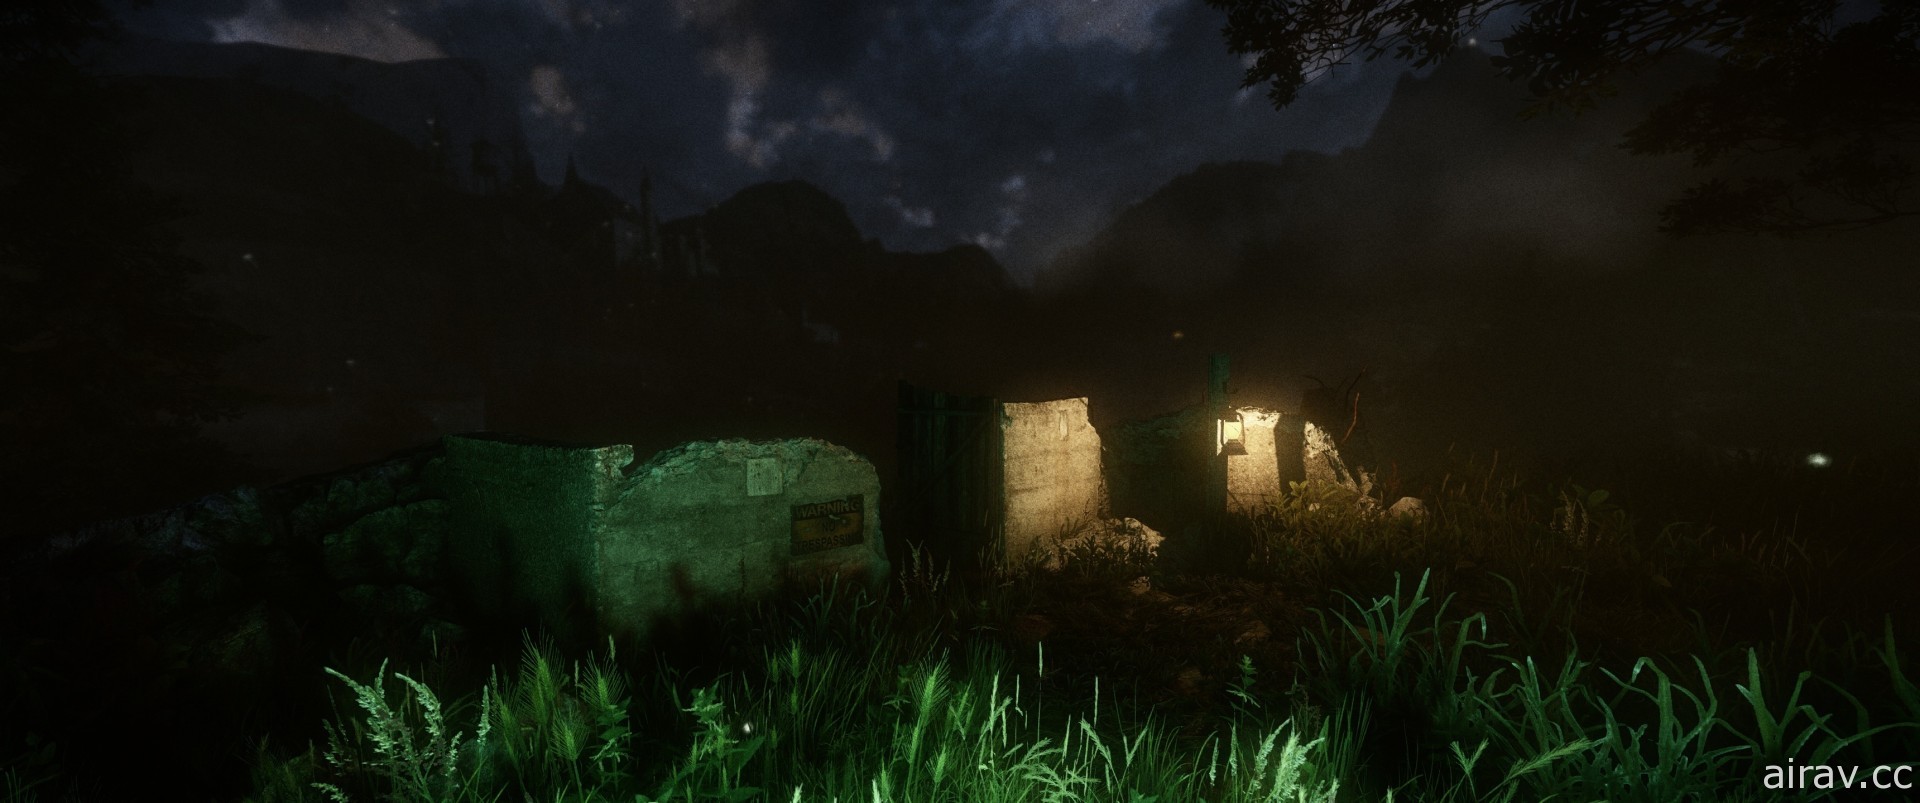 洛夫克拉夫特式恐怖冒险新作《异星方体》即日在 Steam 平台推出